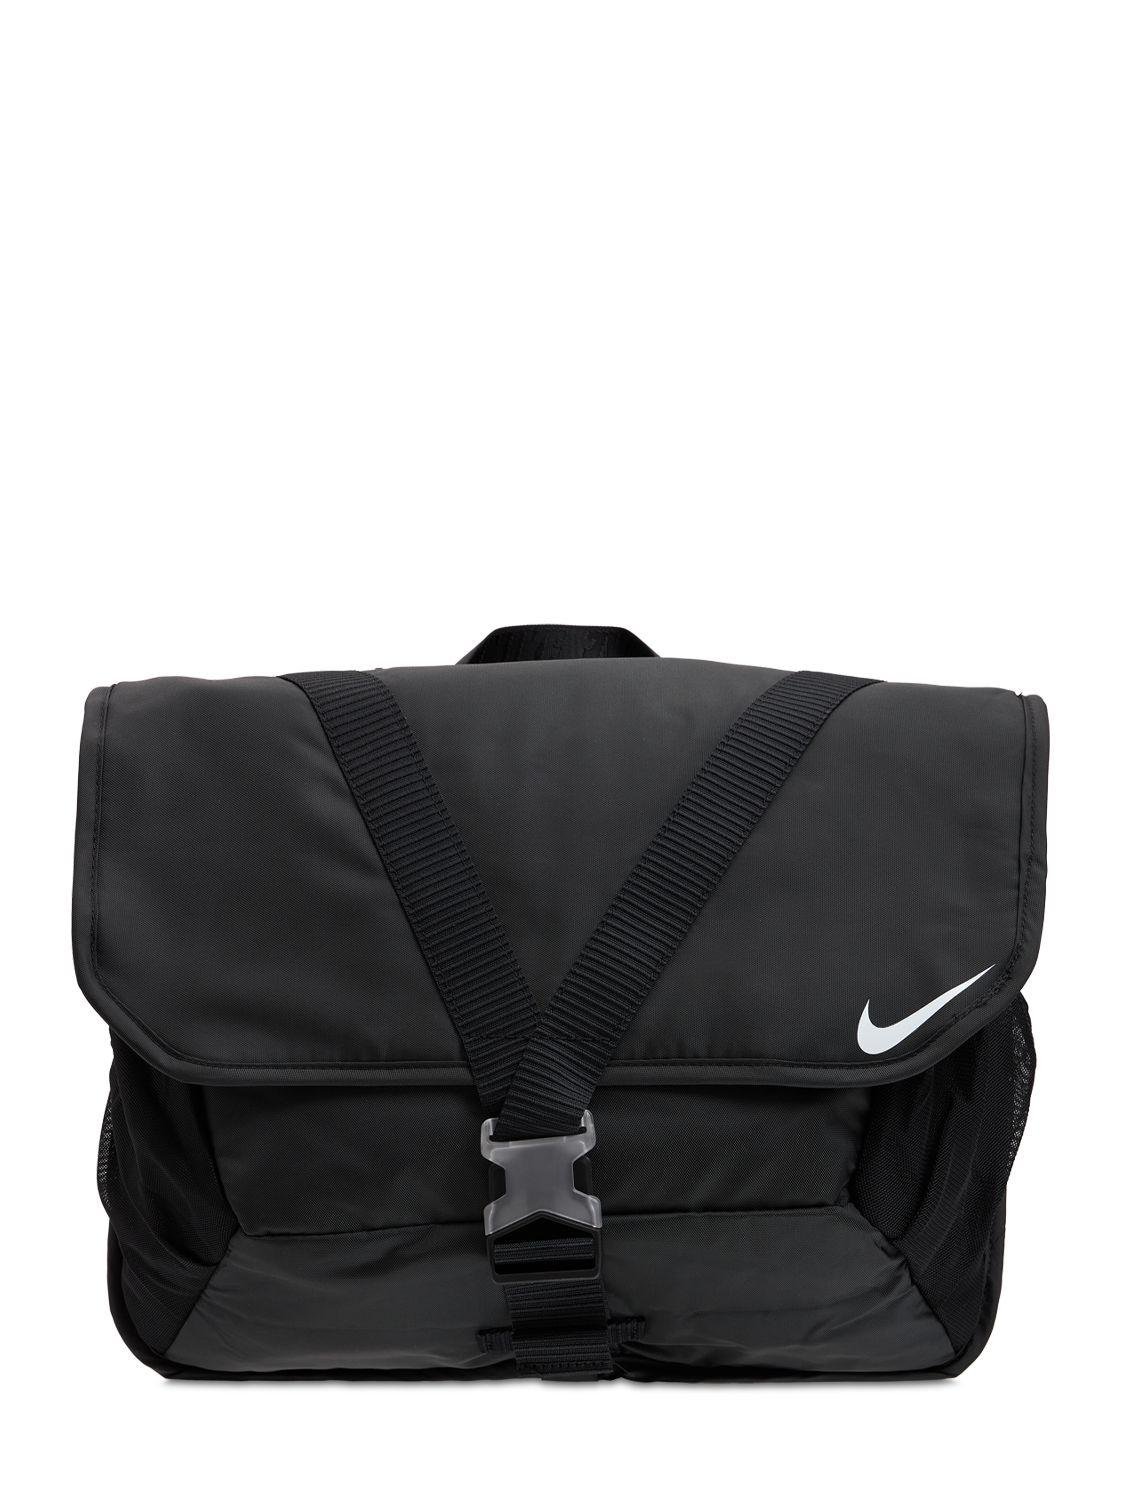 Nike Messenger Bag in Black for Men - Lyst